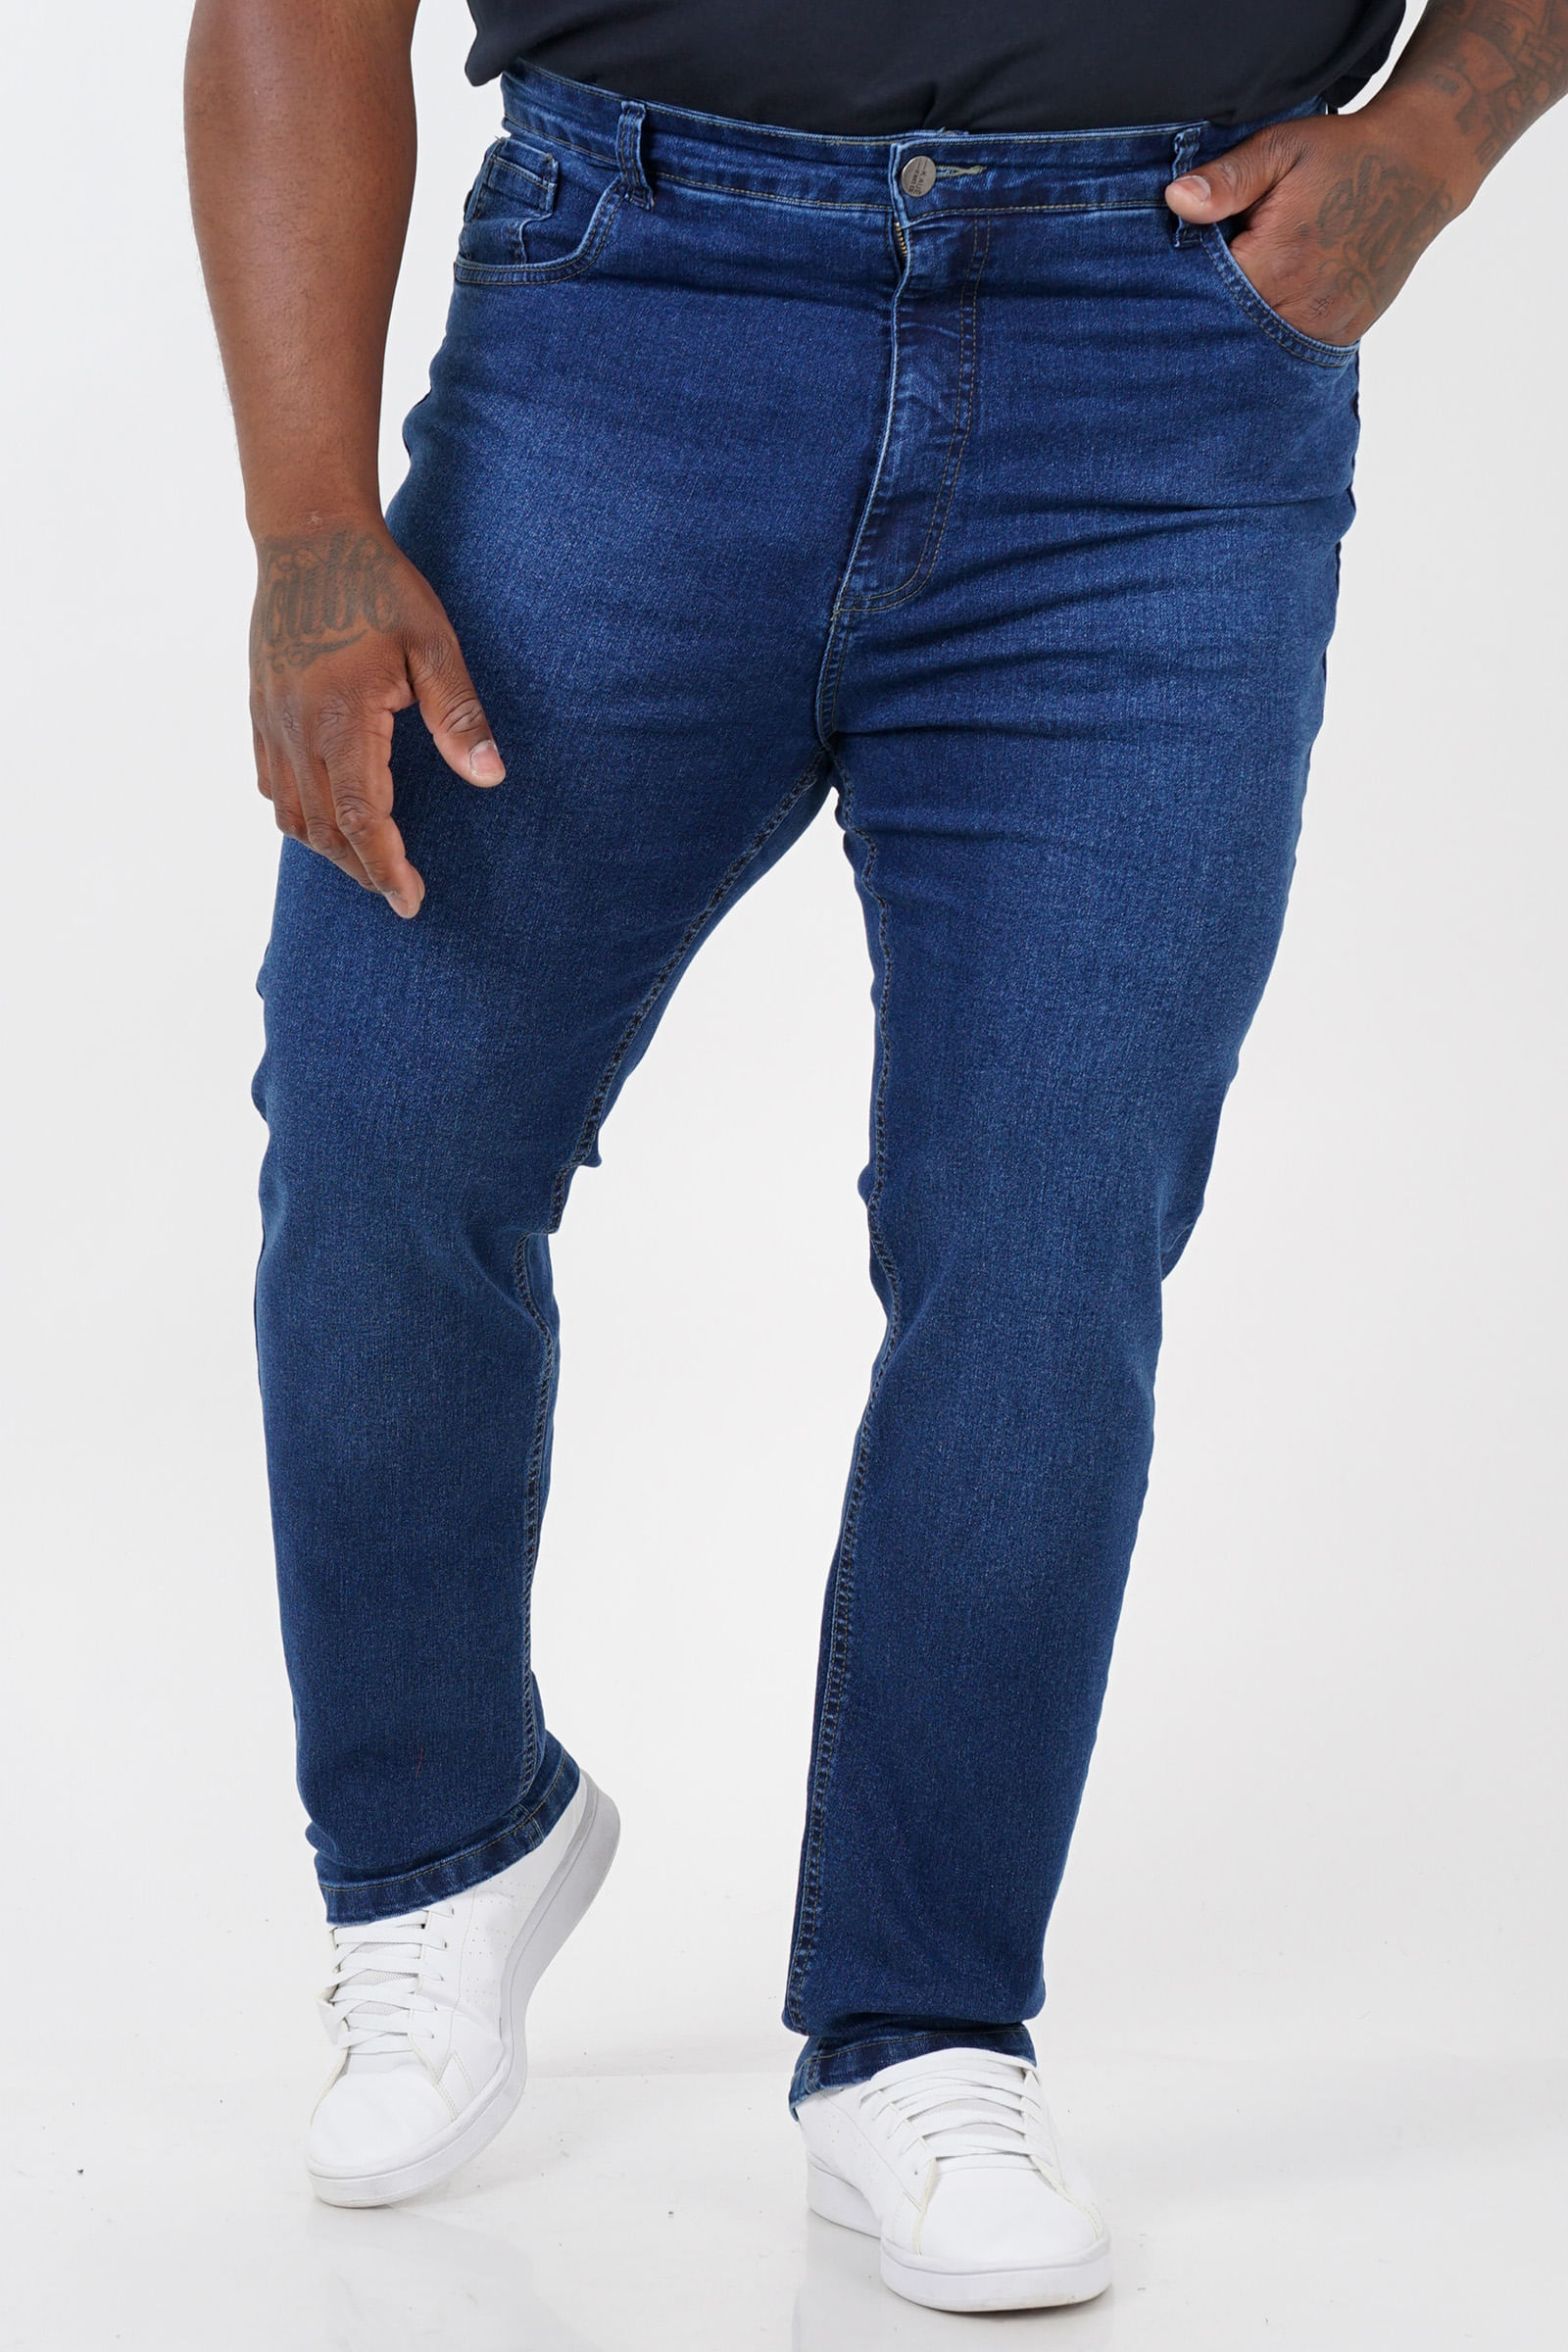 Calça Marsala Wide Leg Jeans em Algodão Plus Size - daluzplussize